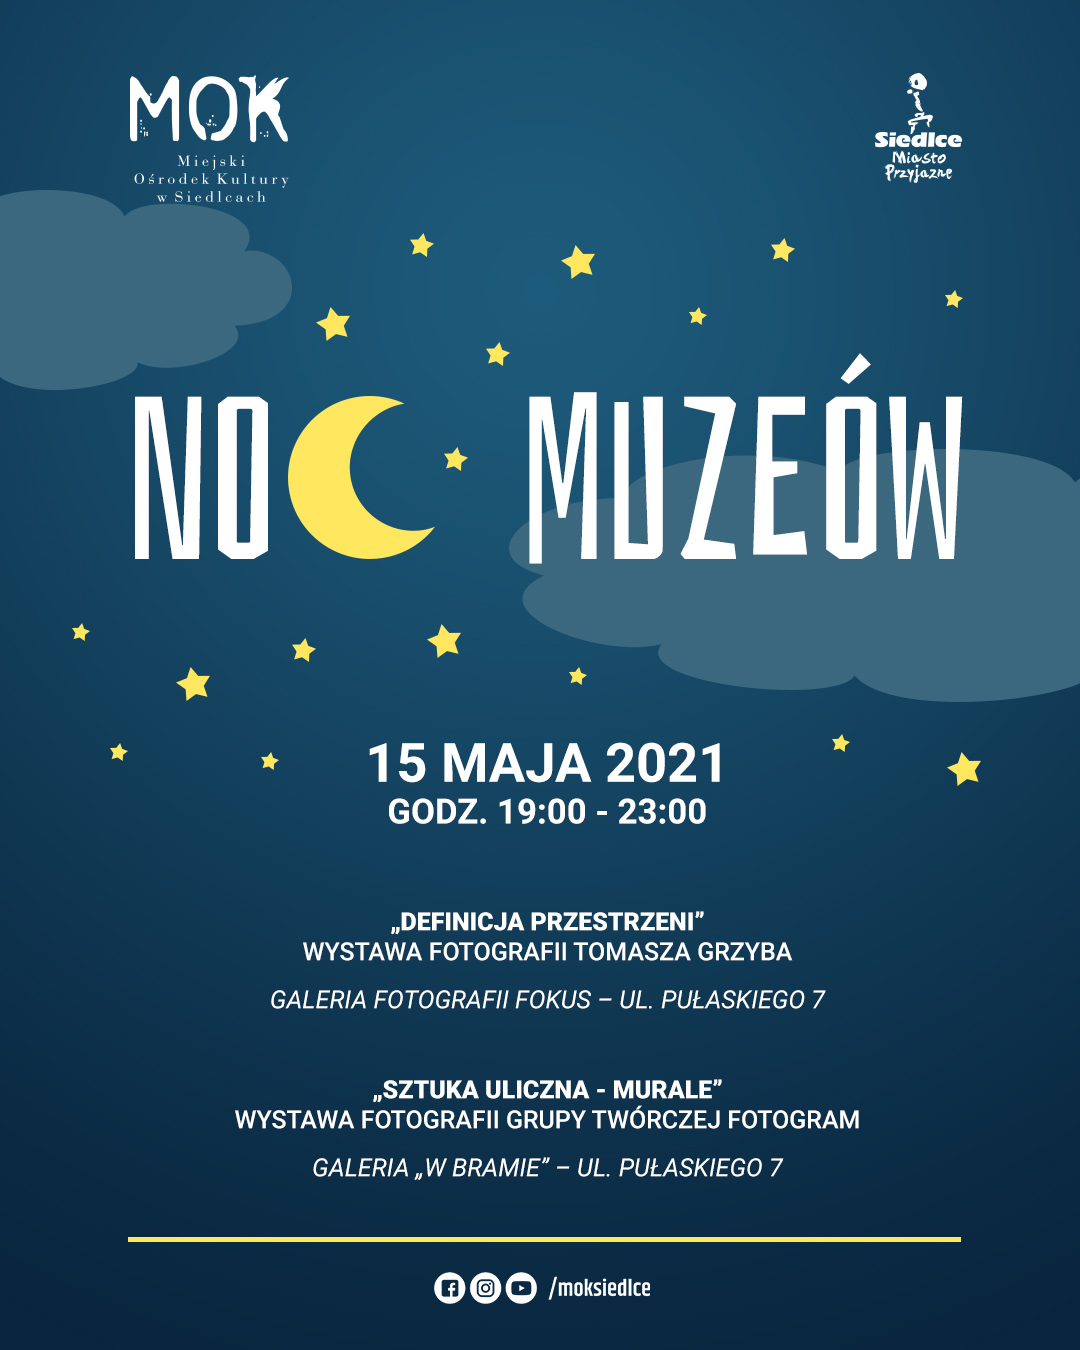 Miejski Ośrodek Kultury w Siedlcach zaprasza na Noc Muzeów 2021! - Zdjęcie główne